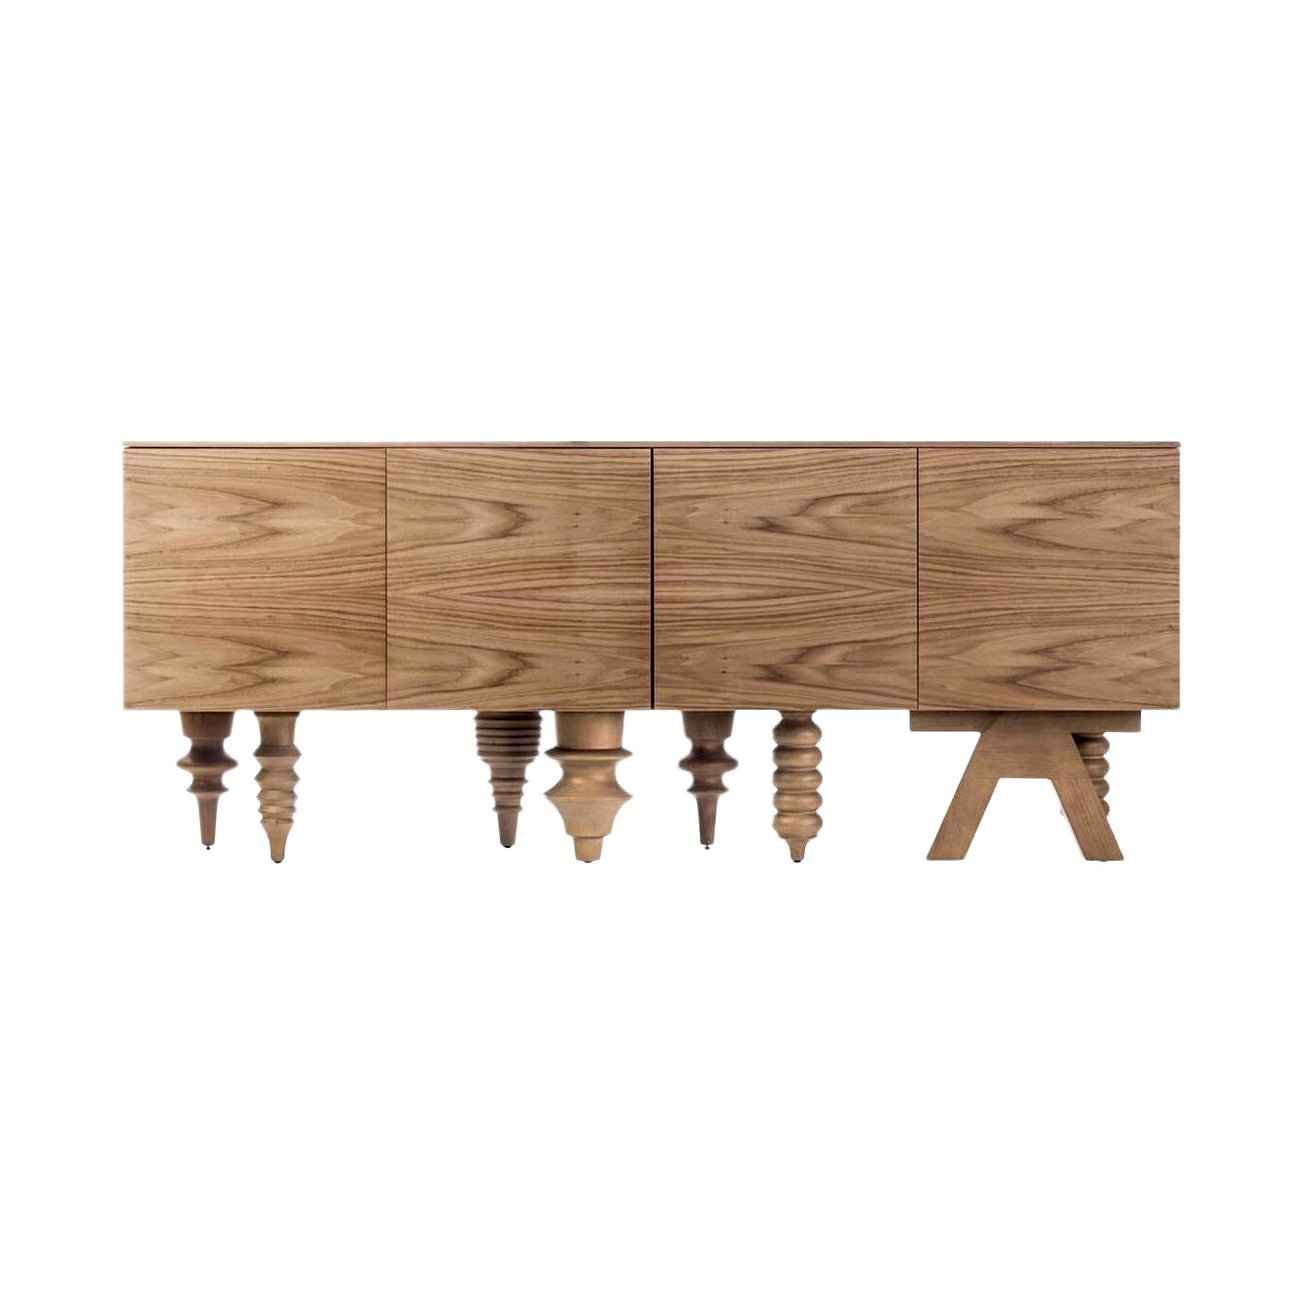 Multileg Walnut Cabinet by Jaime Hayon for BD Barcelona Design For Sale